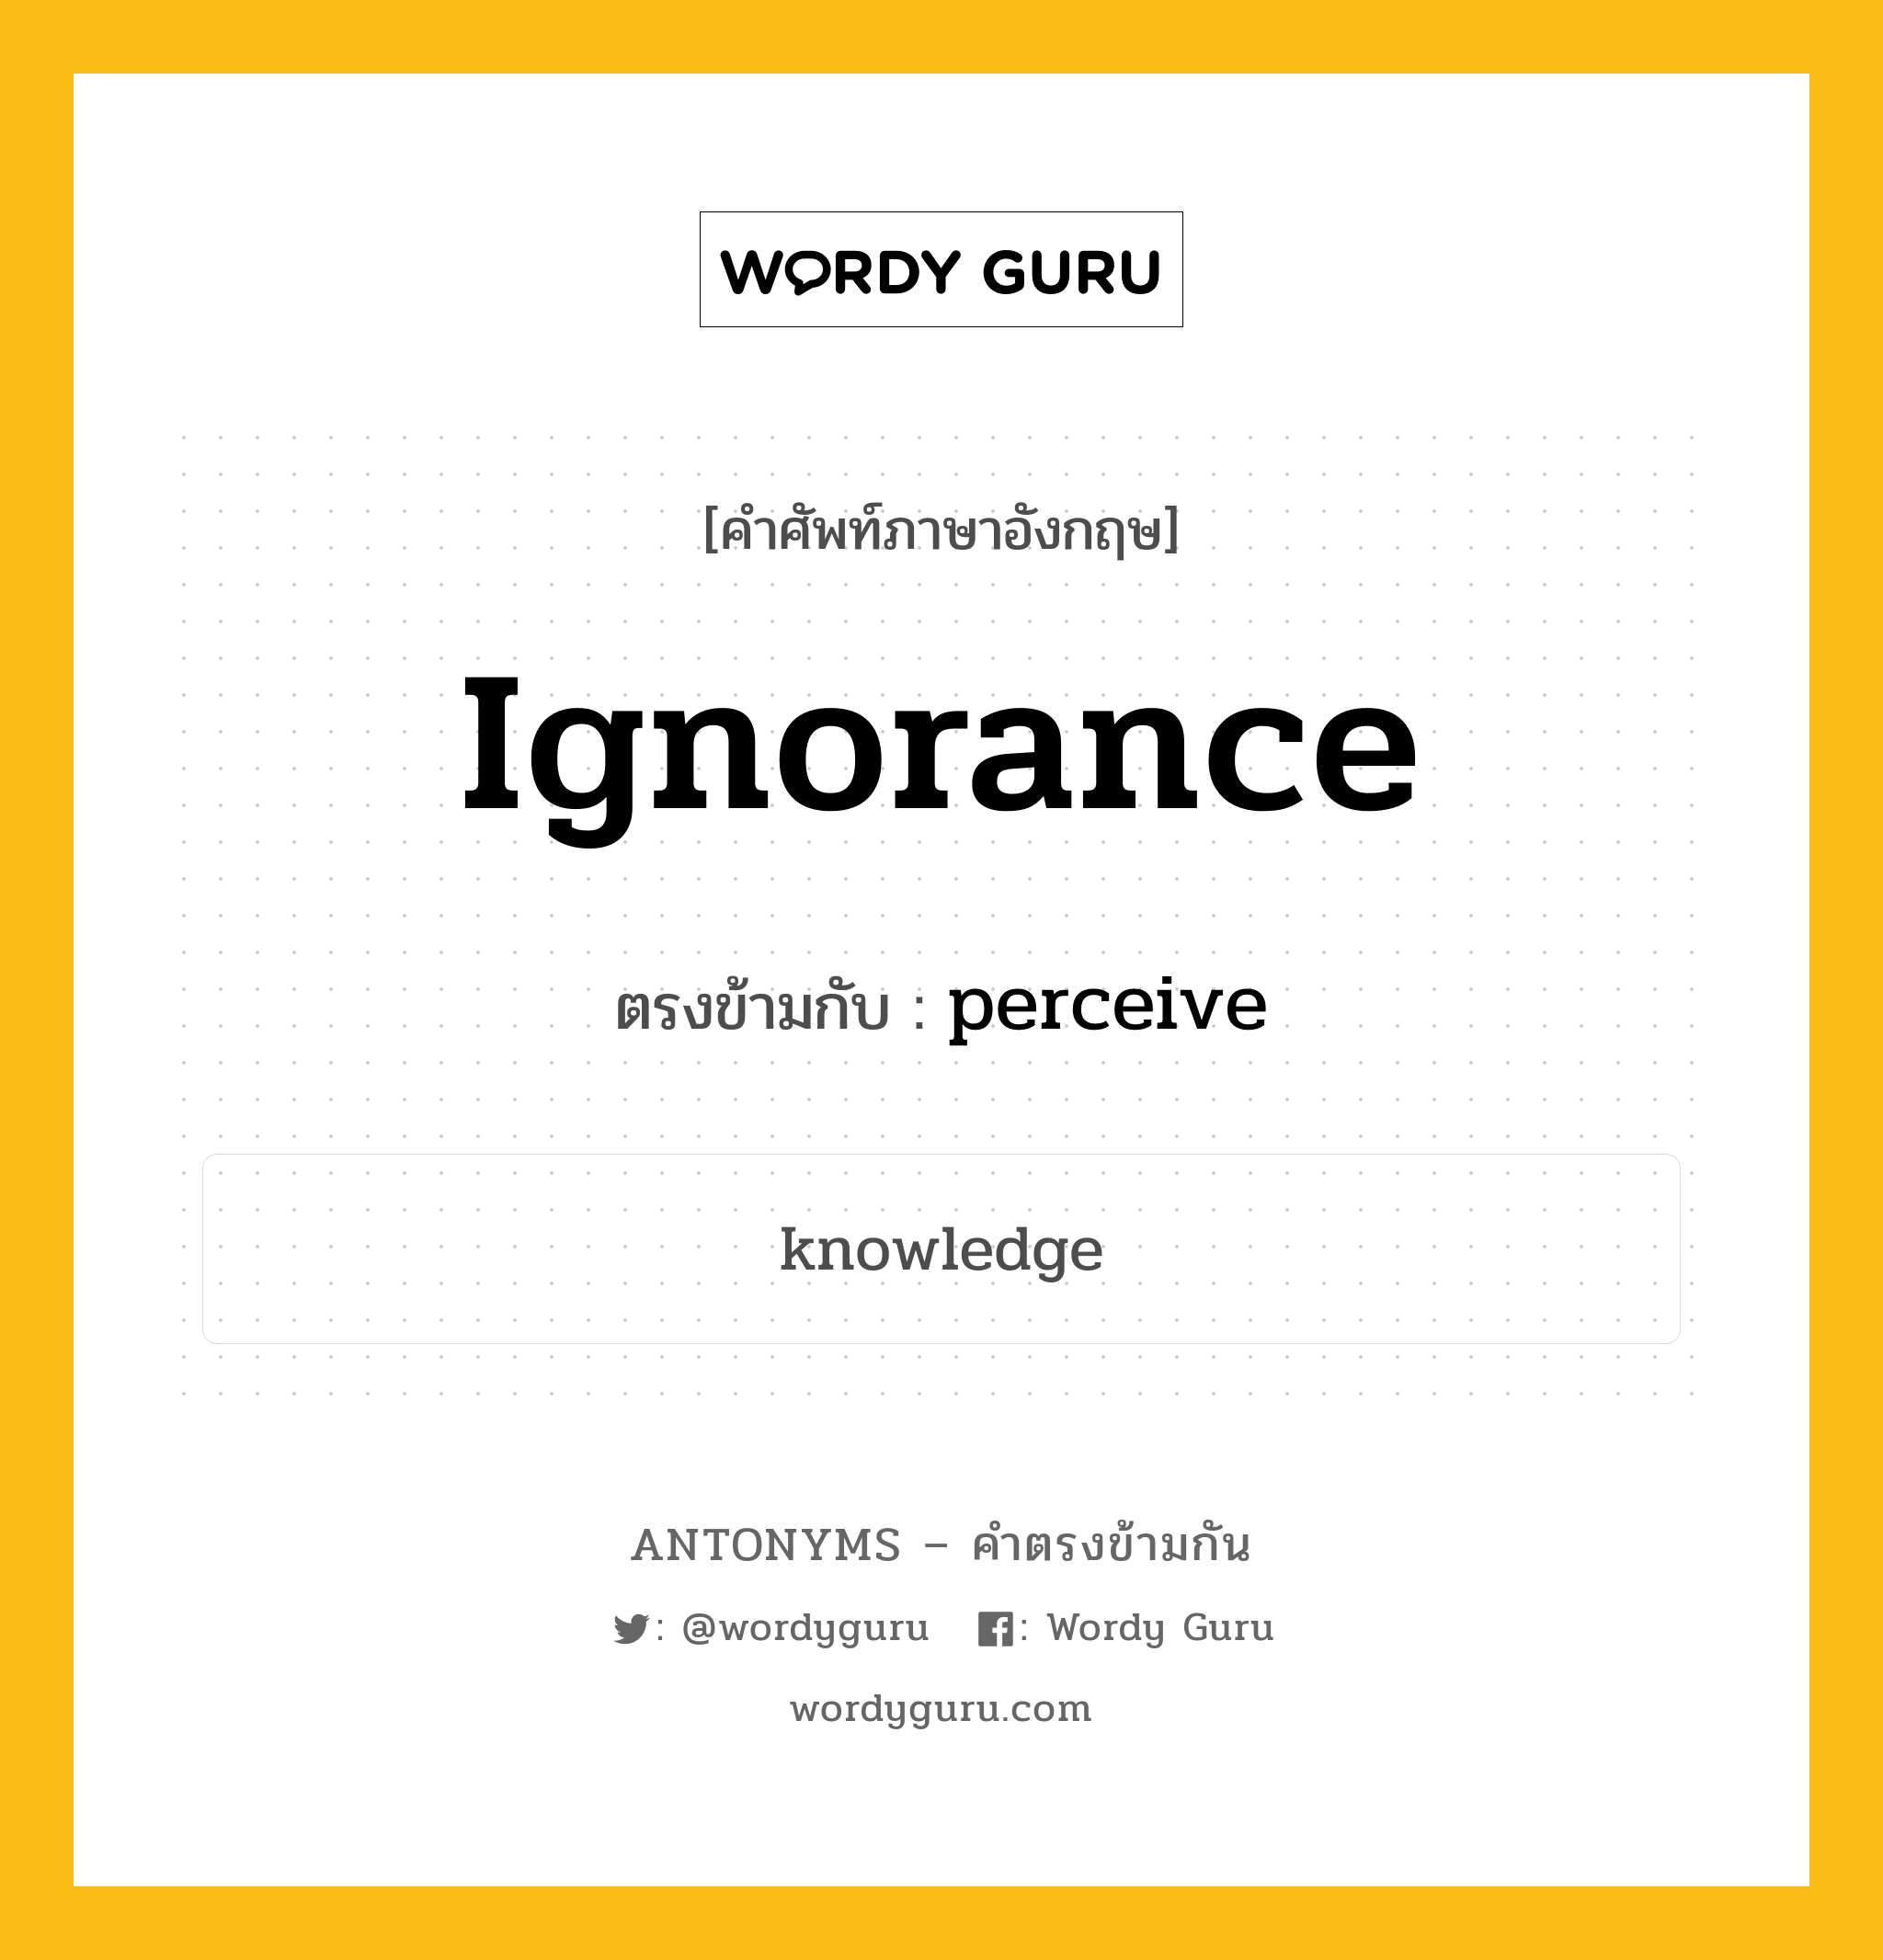 ignorance เป็นคำตรงข้ามกับคำไหนบ้าง?, คำศัพท์ภาษาอังกฤษ ignorance ตรงข้ามกับ perceive หมวด perceive